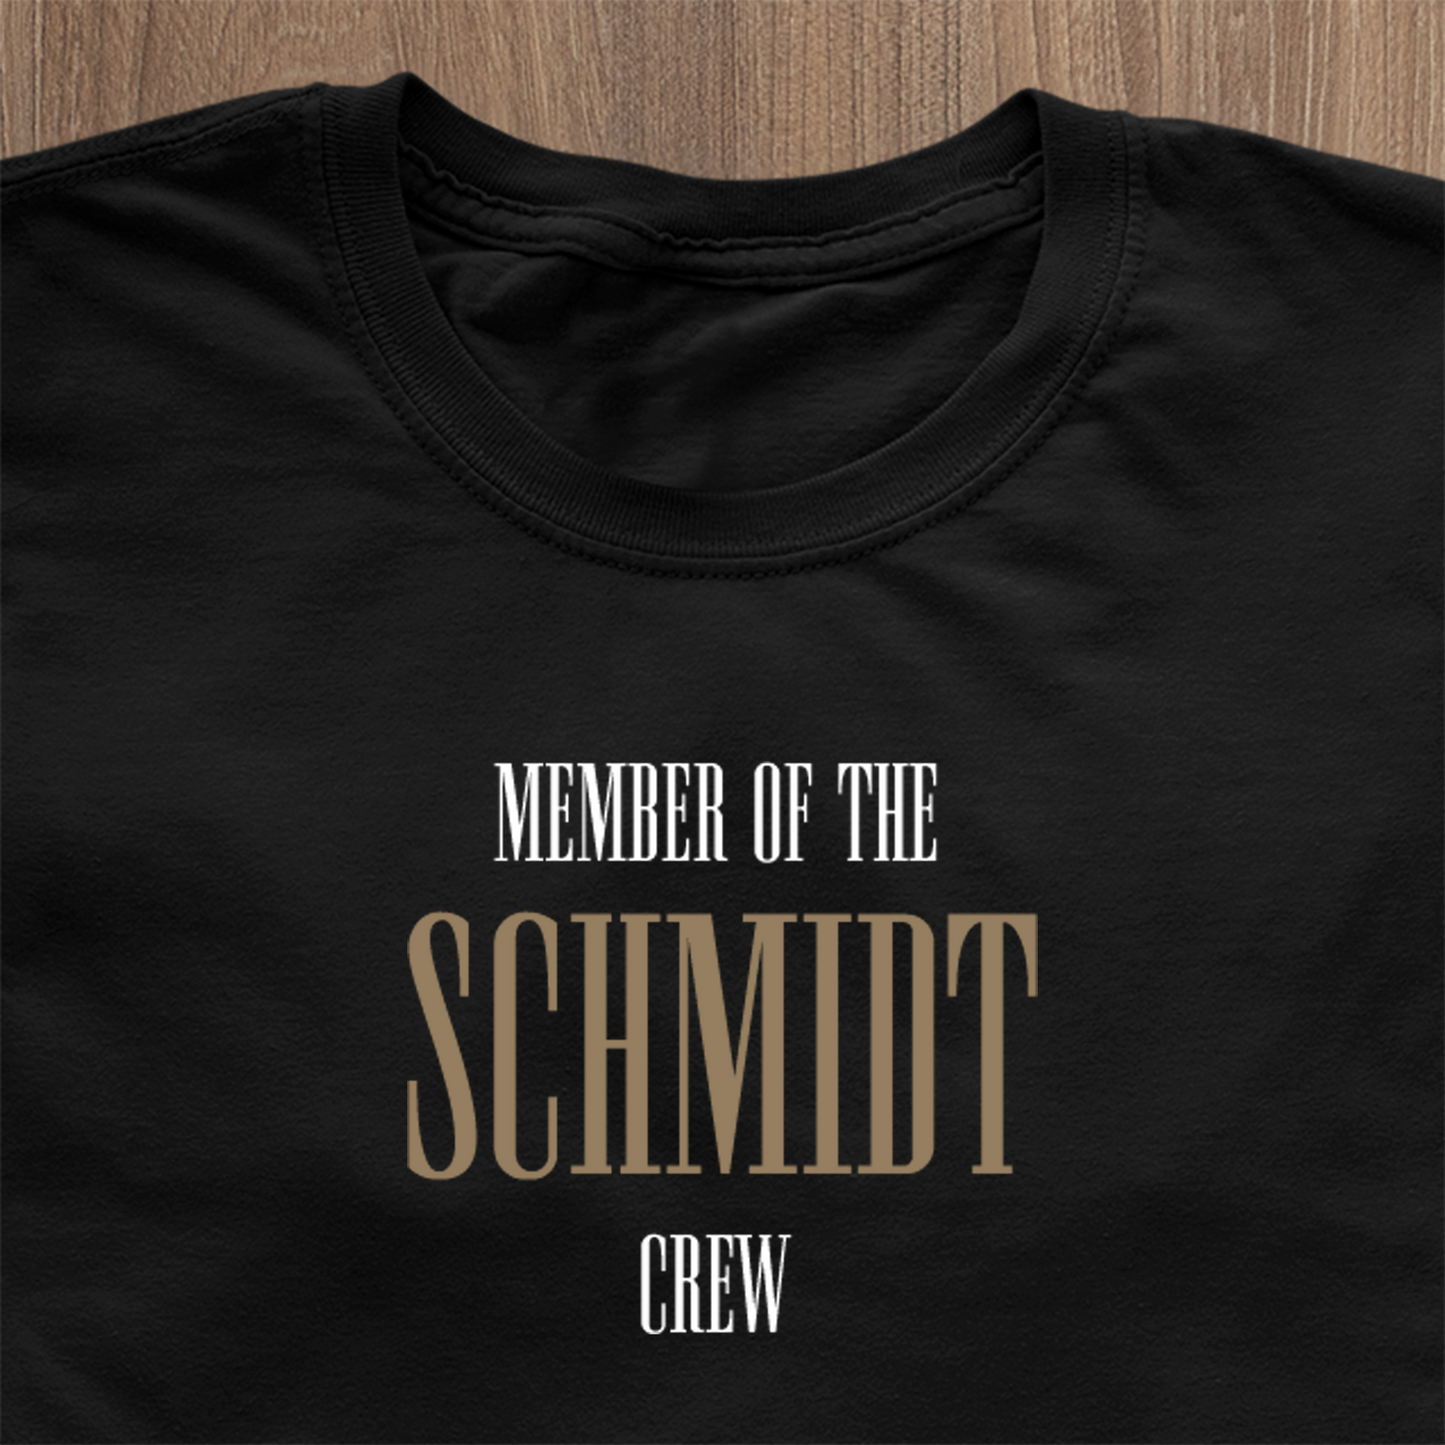 Member of the "Family Name" Crew Men's T-Shirt - Custom Family Name